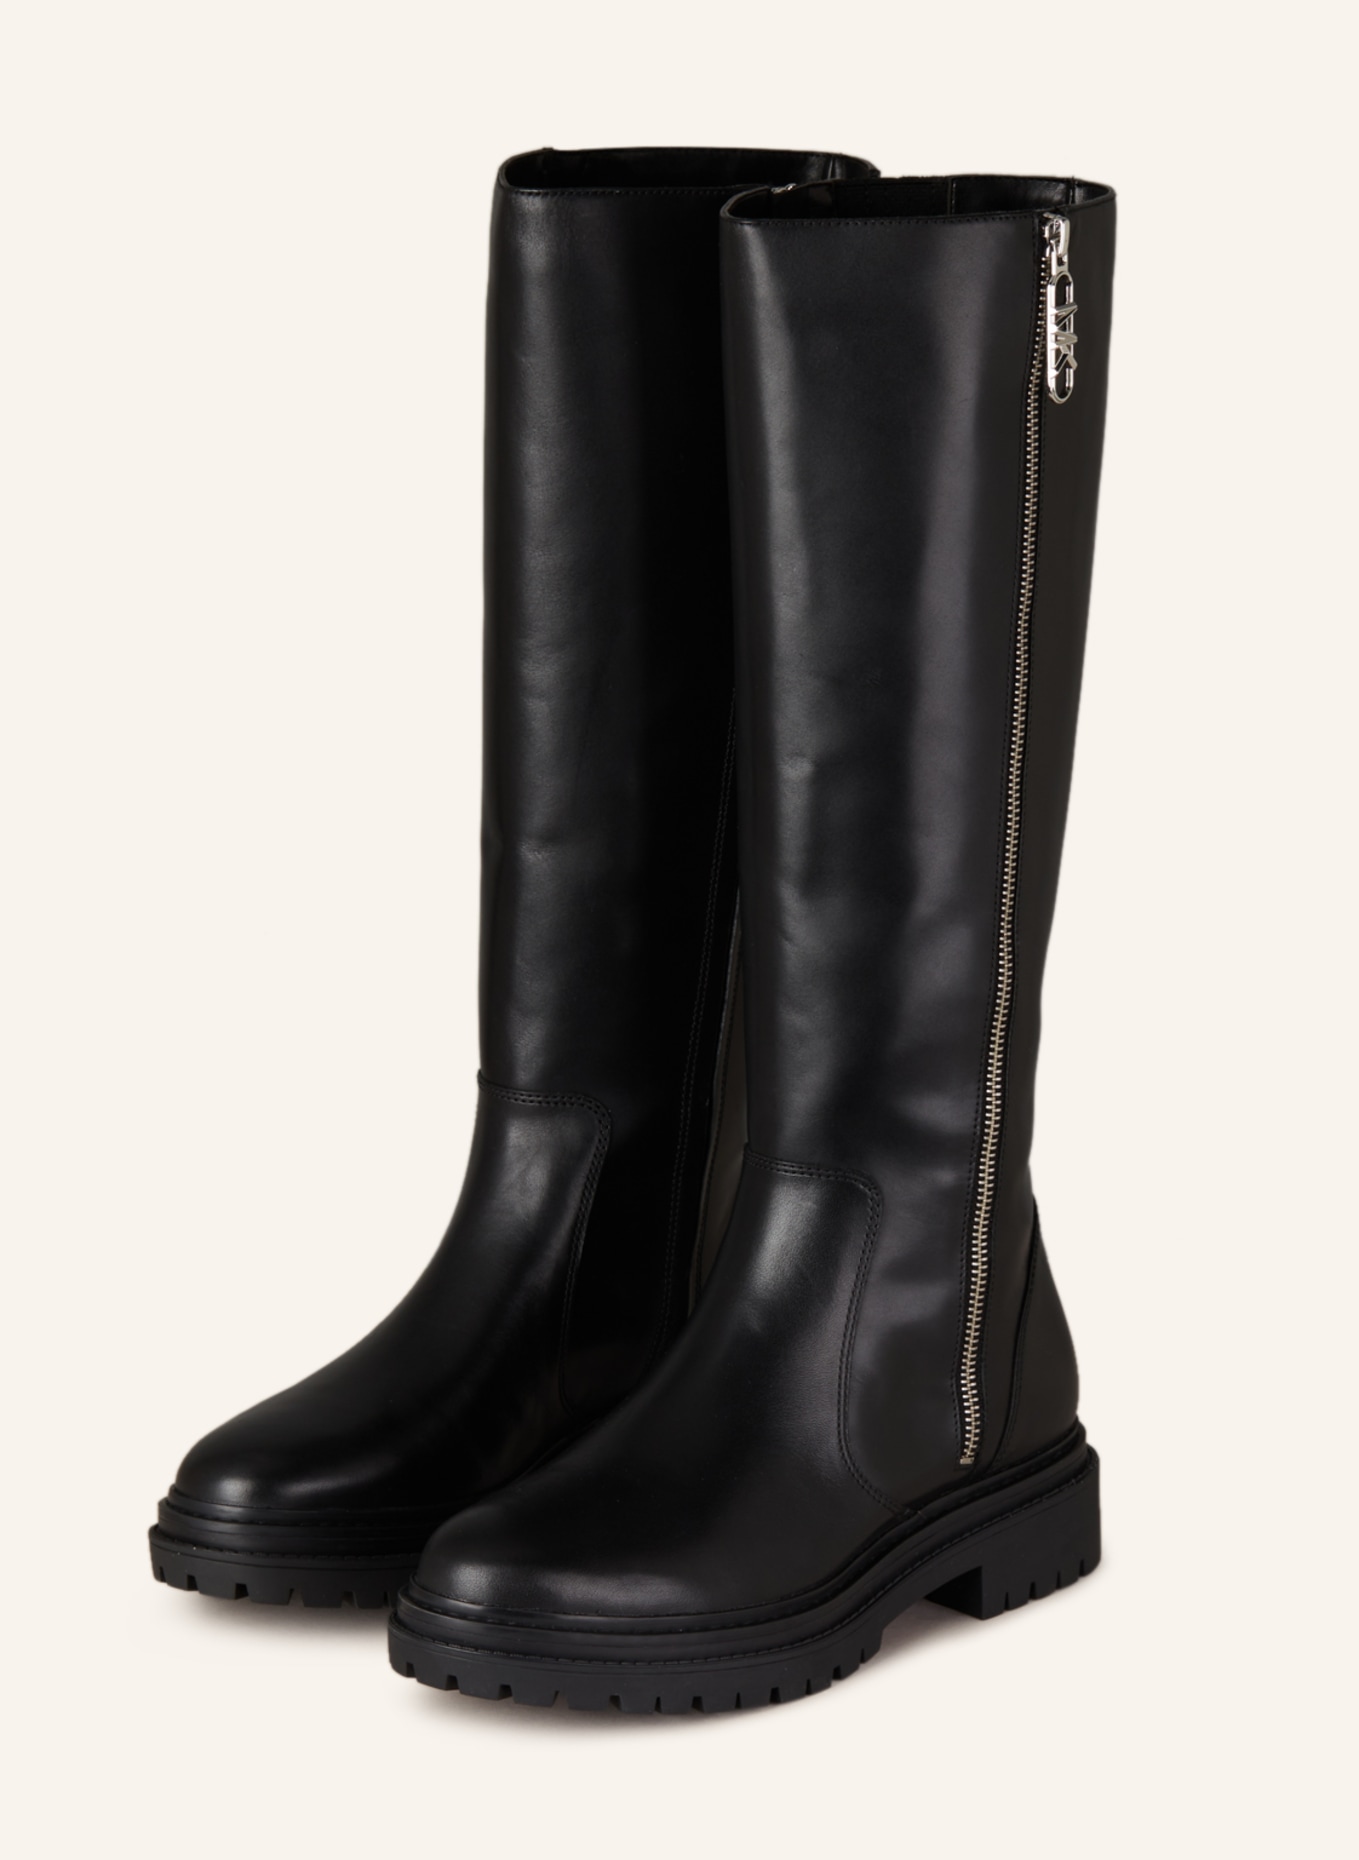 MICHAEL KORS Boots REGAN, Color: 001 BLACK (Image 1)